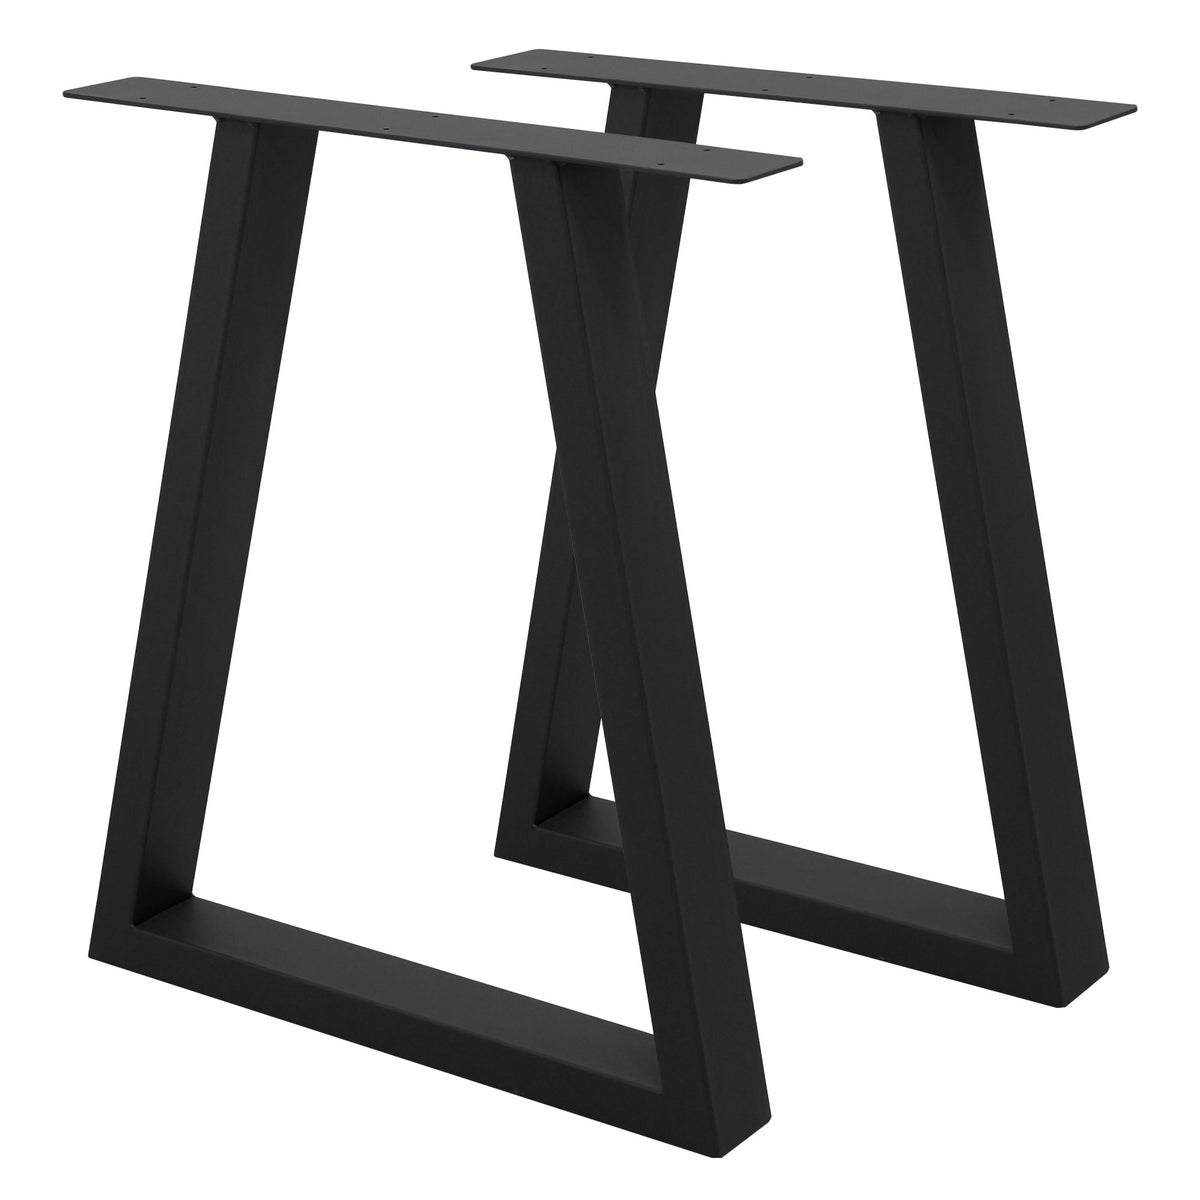 ECD Germany 2x Tischbeine Trapez Design, 60 x 72 cm, Schwarz, aus pulverbeschichtetem Stahl, Industriedesign, Metall Tischkufen Tischuntergestell Tischgestell Möbelfüße, für Esstisch Schreibtisch